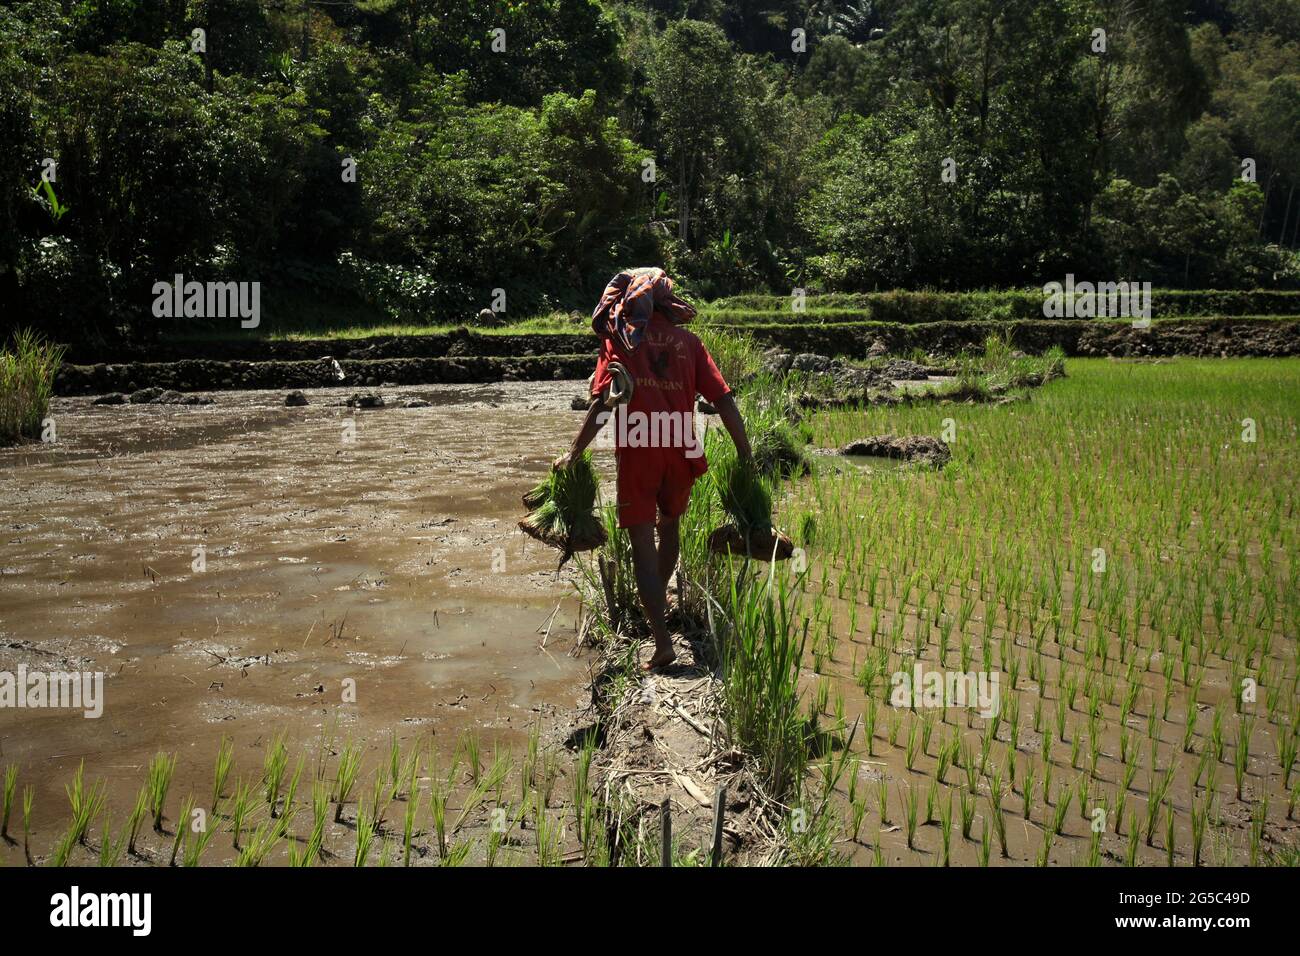 Ein Reisbauer, der Jungreispflanzen trägt und an einem hellen Tag auf einem Damm durch Reisfelder geht, in der Nähe von Kurra, Tana Toraja, Süd-Sulawesi, Indonesien. Höhere Temperaturen, die durch die globale Erwärmung verursacht werden, dürften die Reiserträge in Indonesien verringern. Veränderungen der El-Nino-Muster, die den Beginn und die Dauer der Regenzeit beeinflussen, bringen auch die landwirtschaftliche Produktion in einen anfälligen Status. Die Entwicklung neuer oder verbesserter lokaler Reissorten, die widerstandsfähiger sind - wie jüngste Studien in anderen Ländern - könnte einer der Schlüssel zur Milderung sein. Stockfoto